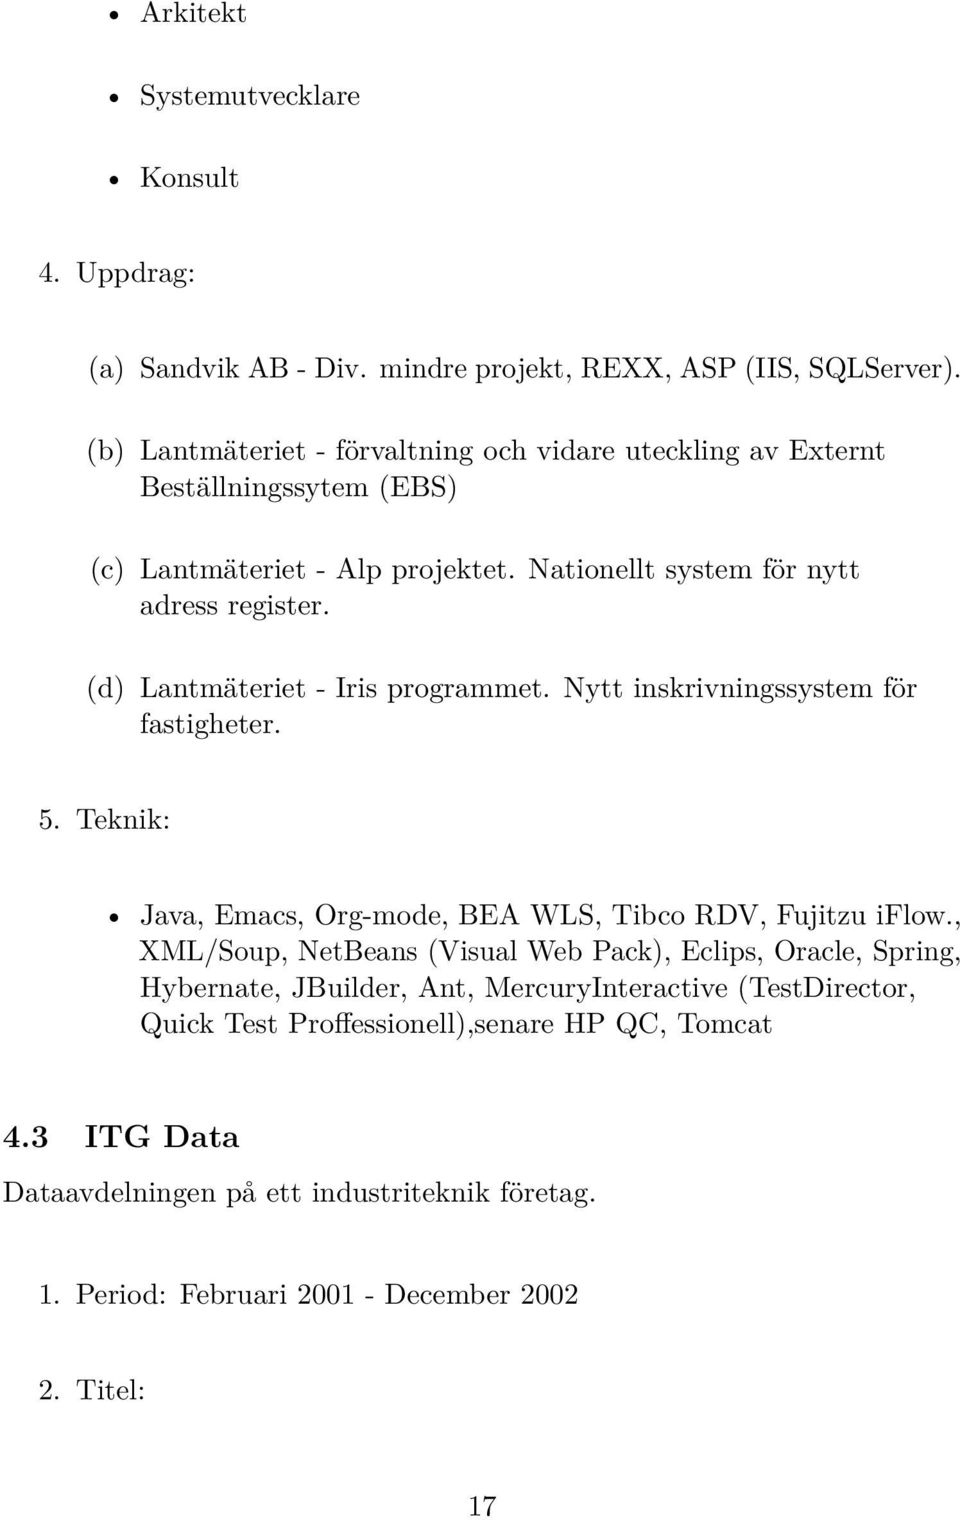 (d) Lantmäteriet - Iris programmet. Nytt inskrivningssystem för fastigheter. 5. Teknik: Java, Emacs, Org-mode, BEA WLS, Tibco RDV, Fujitzu iflow.